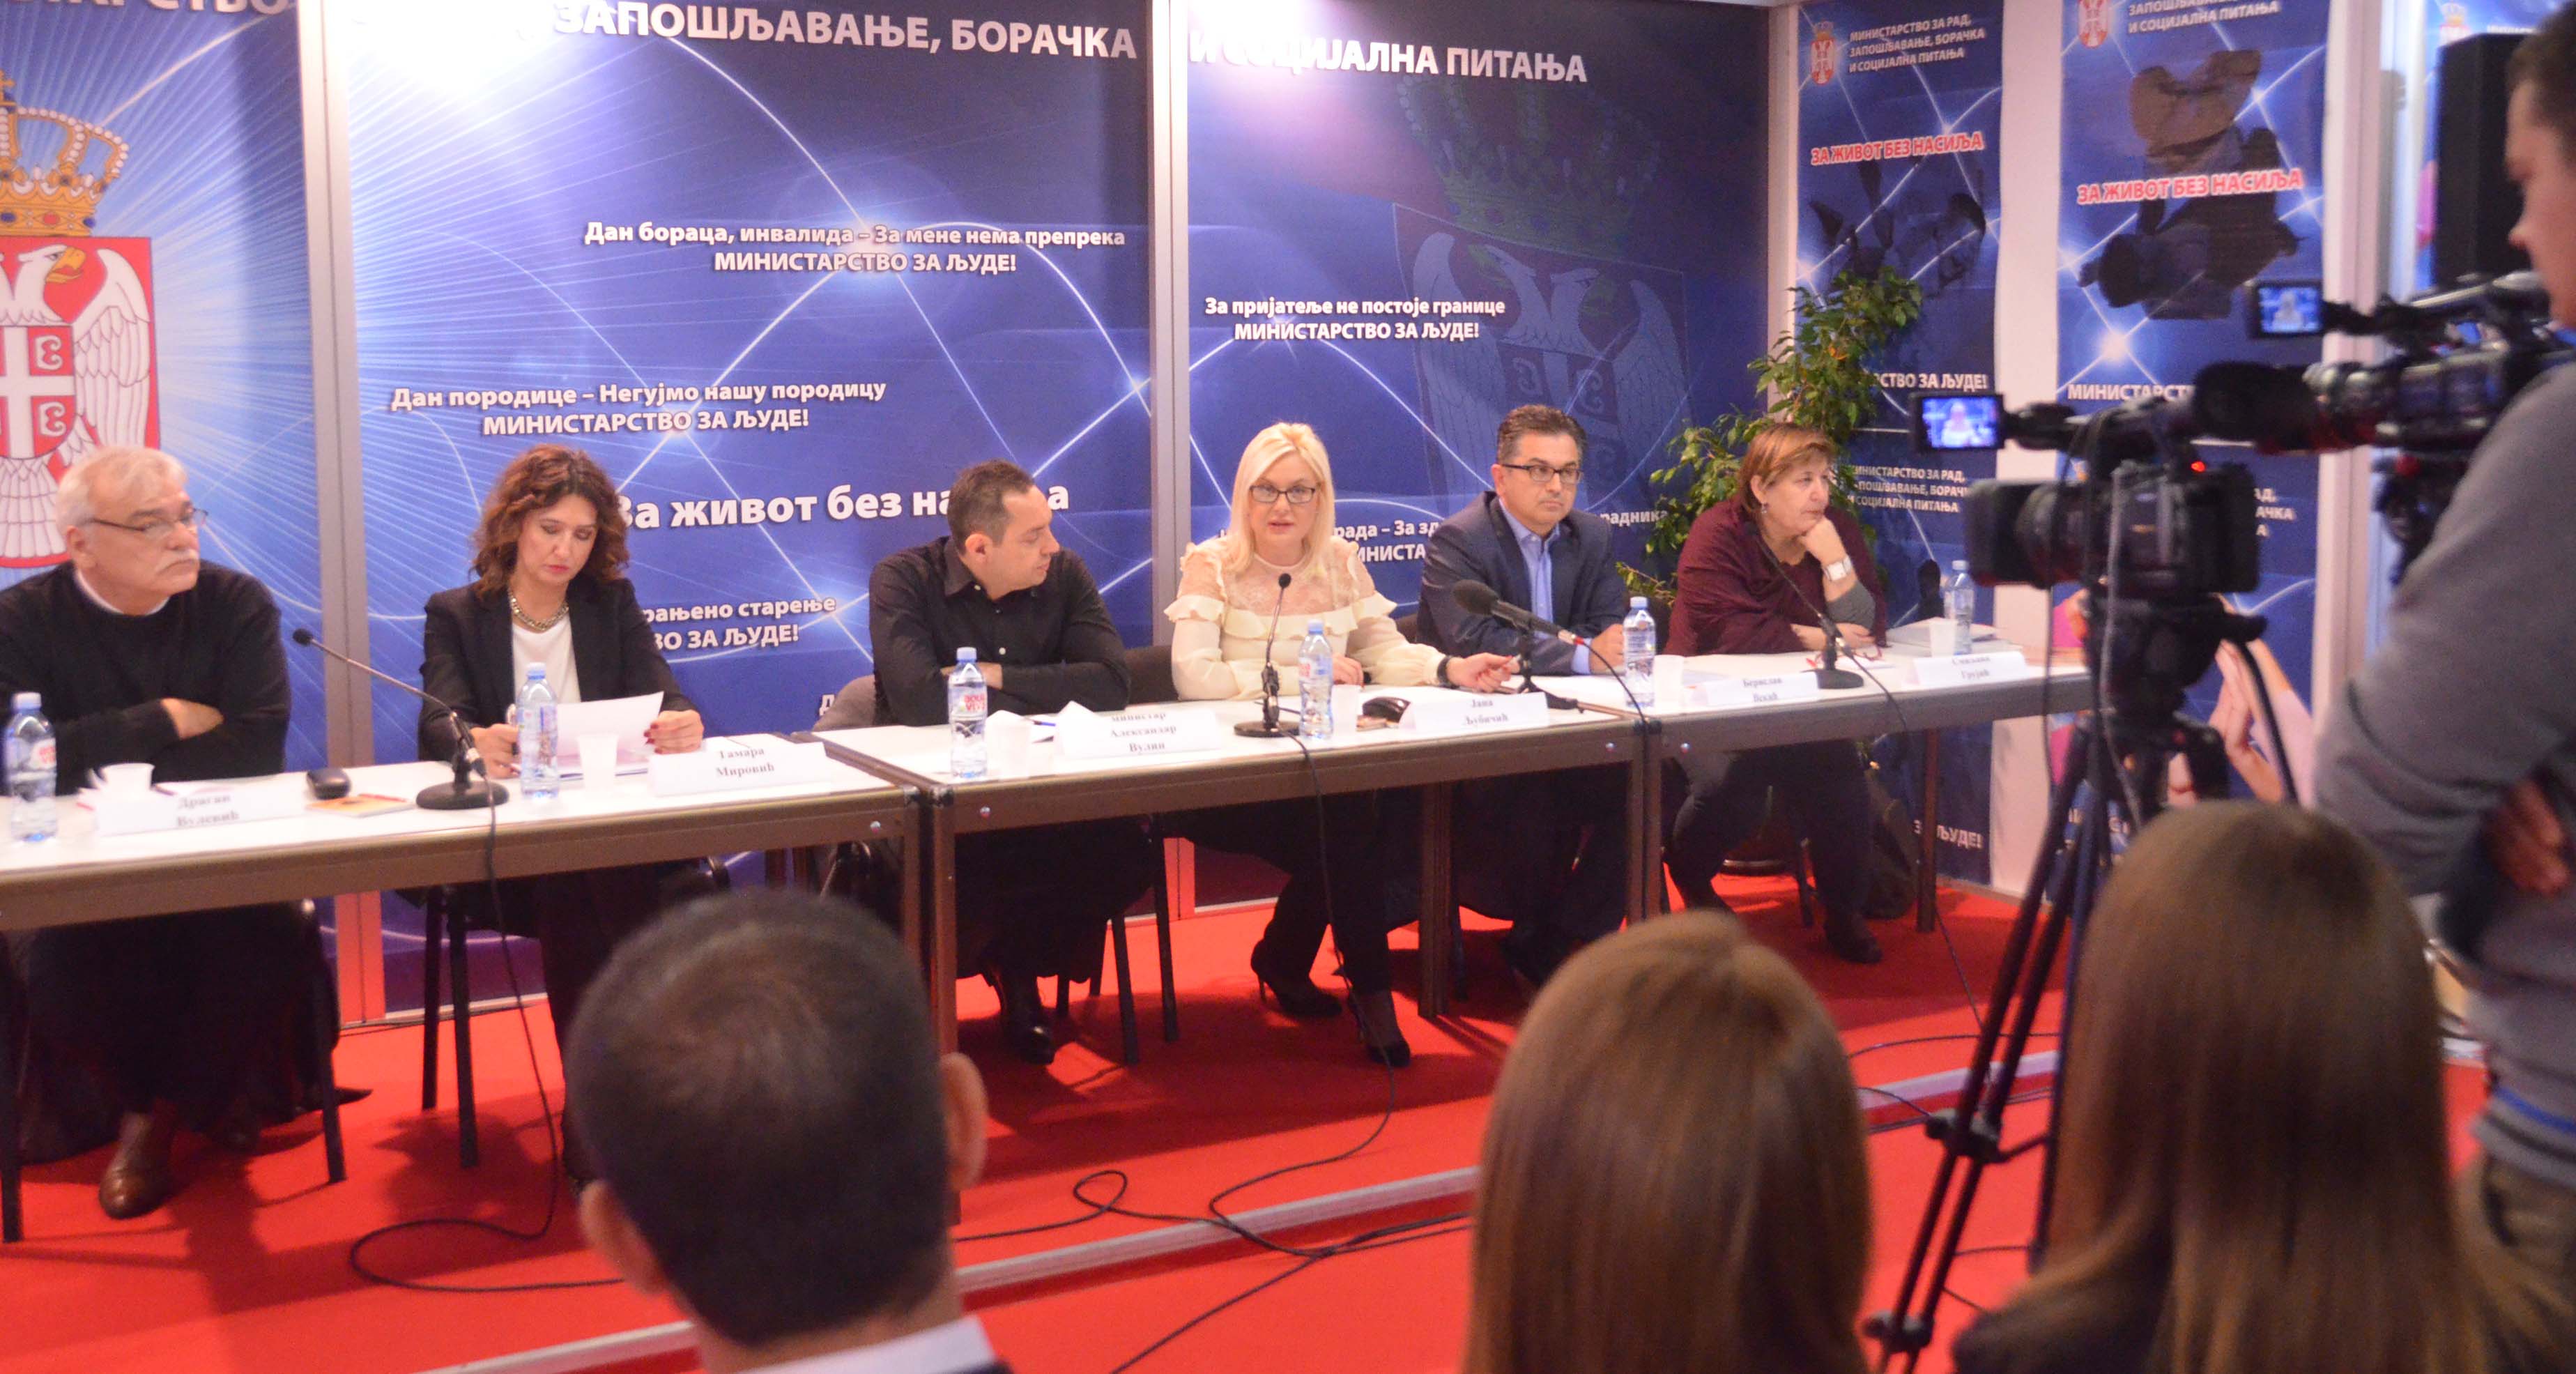 Јана Љубичић: Република Србија је одлучна да се супротстави насиљу у породици